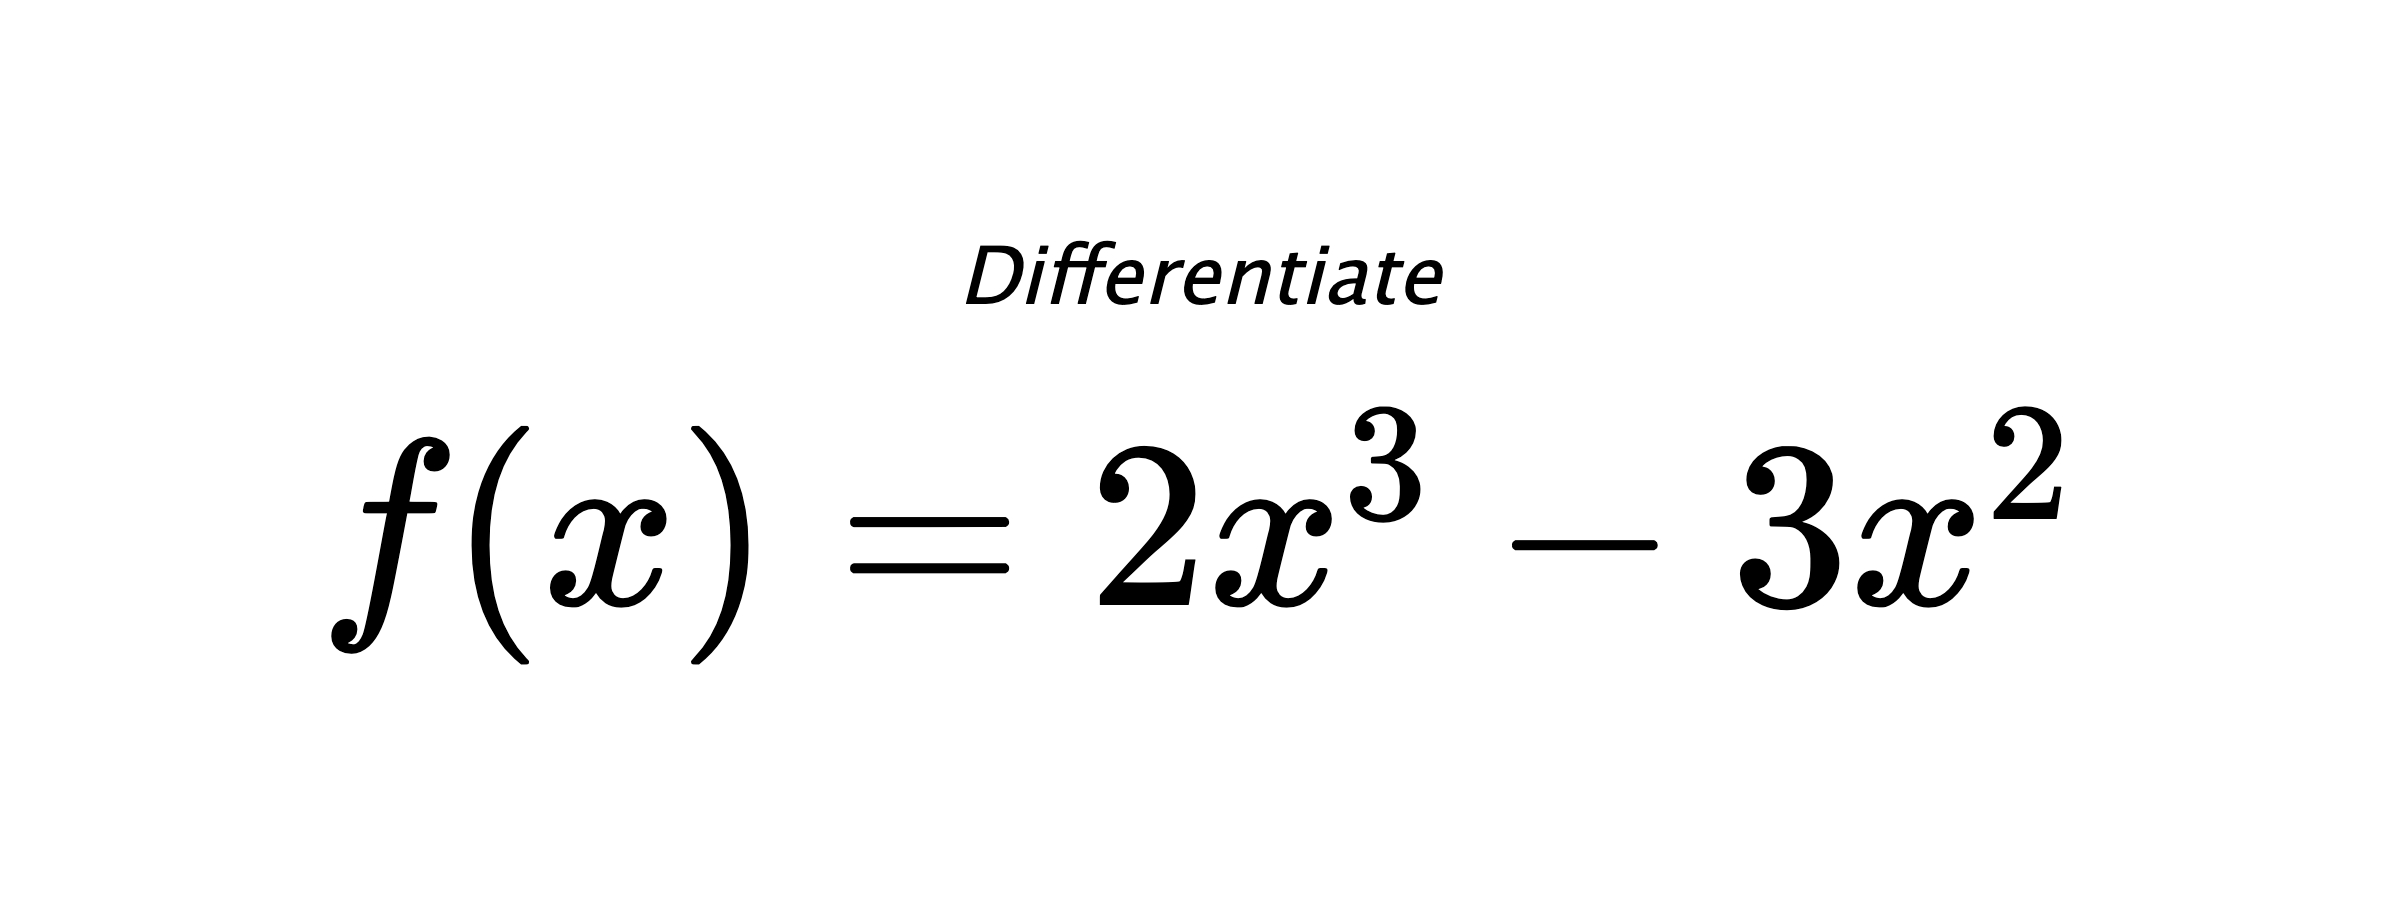 Differentiate $ f(x) = 2 x^{3} - 3 x^{2} $